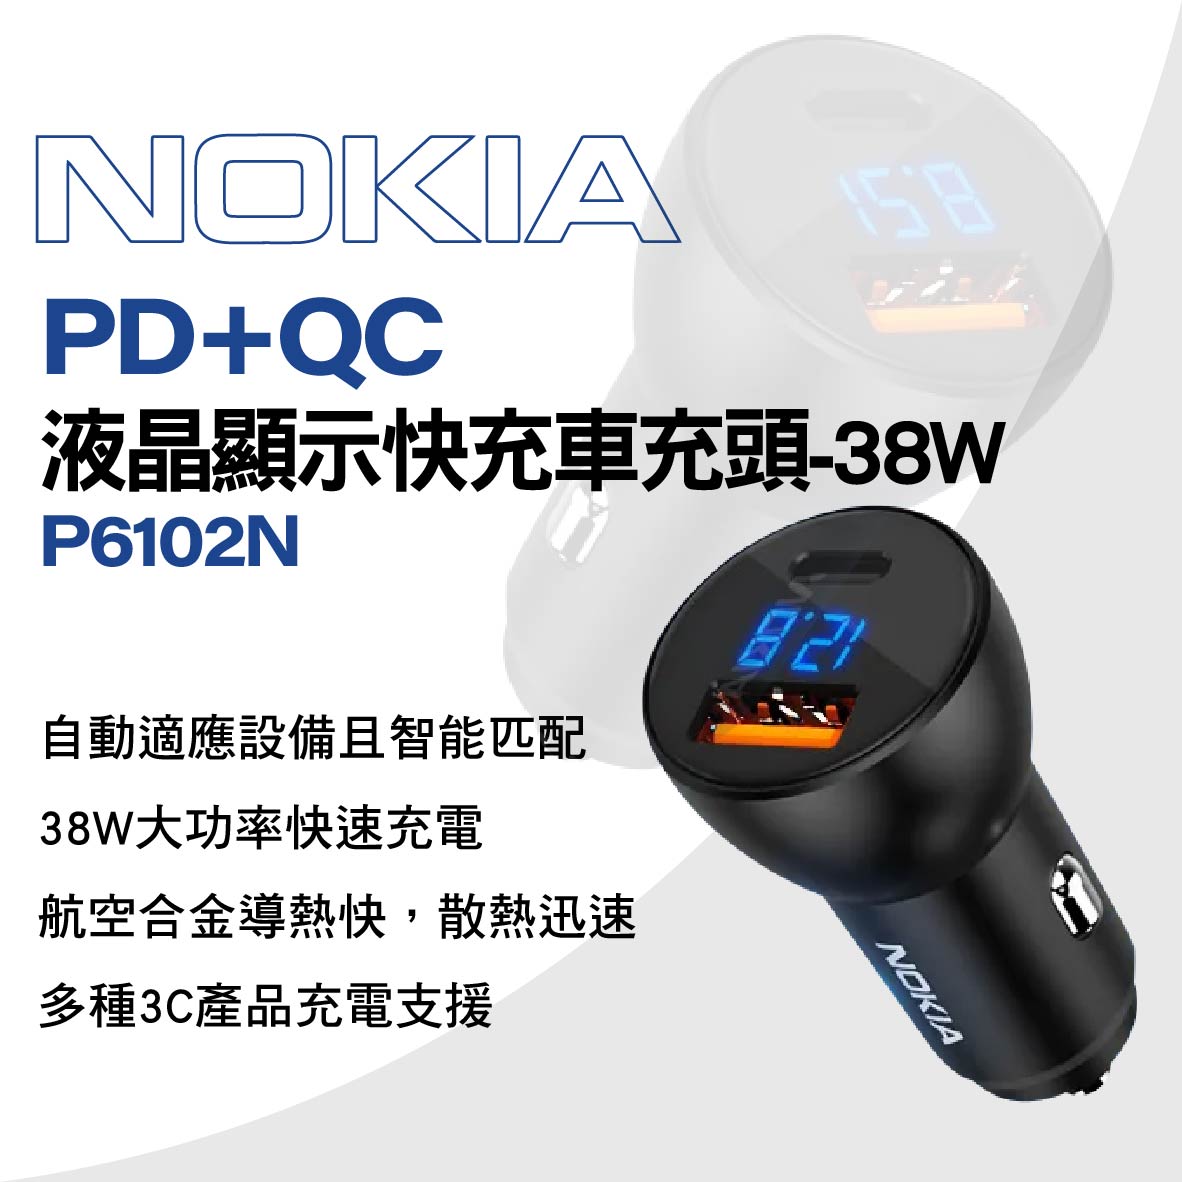 真便宜 NOKIA P6102N PD+QC液晶顯示快充車充頭-38W